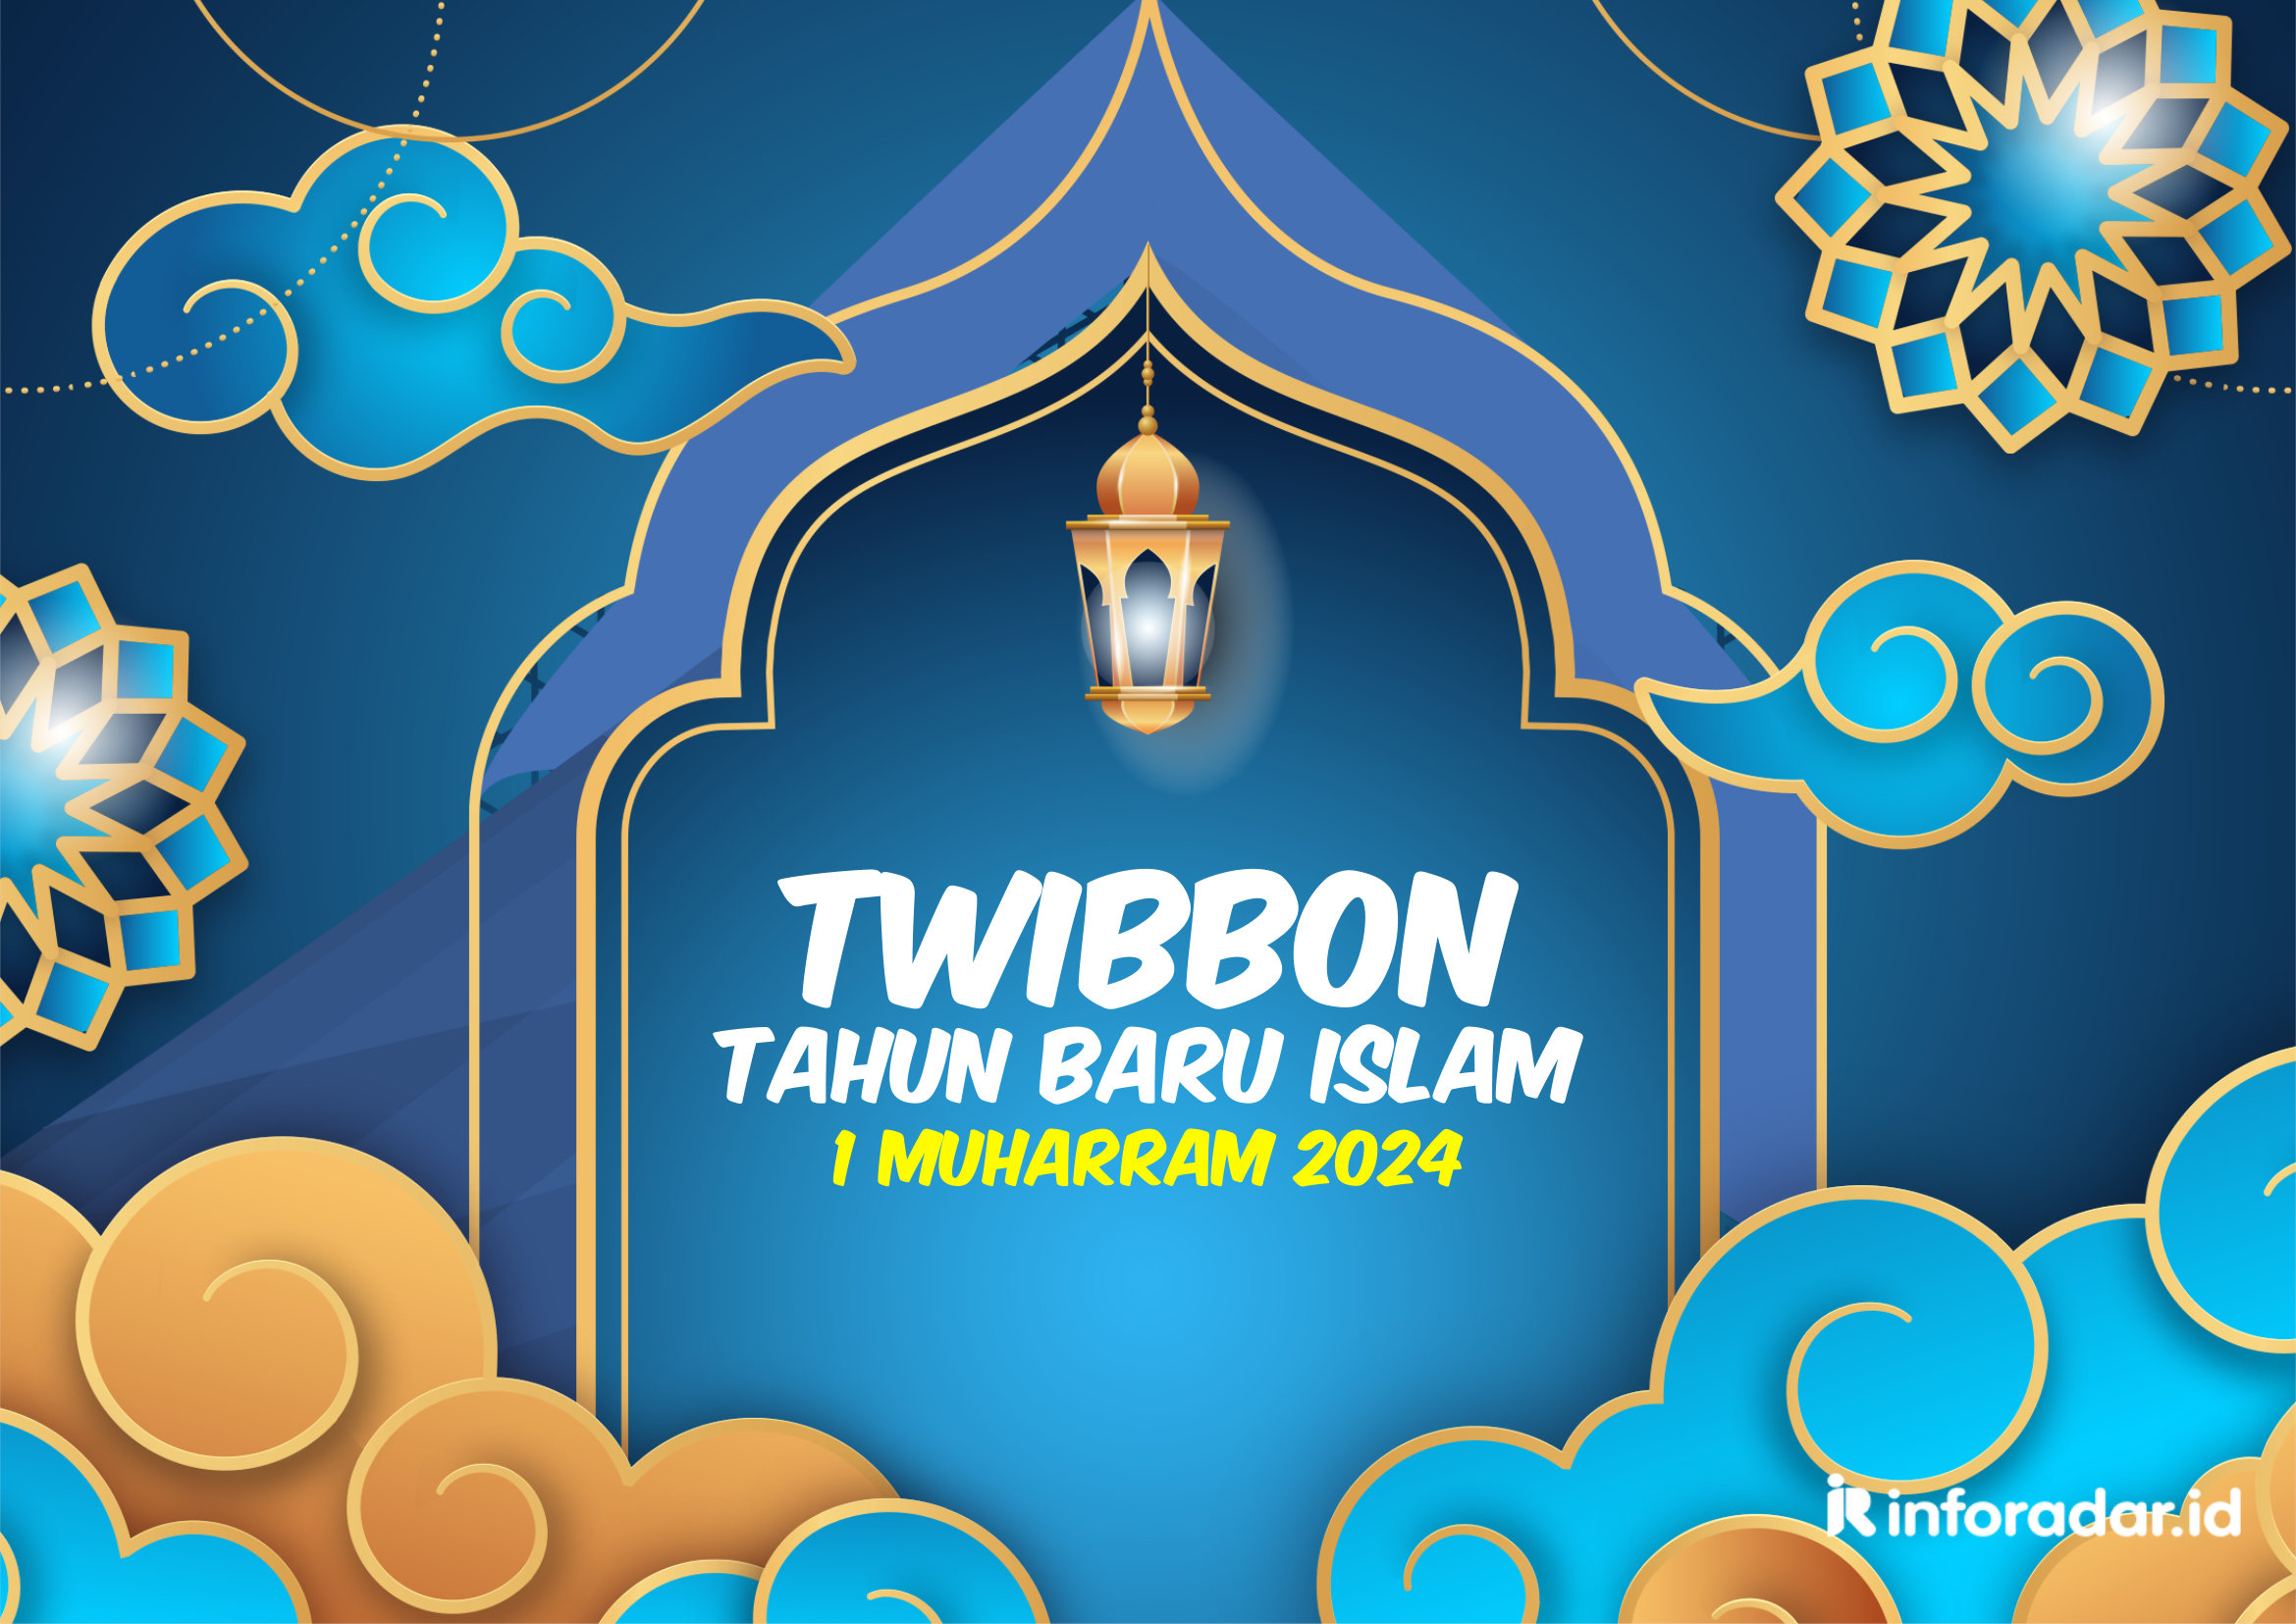 10 Link Twibbon Tahun Baru Islam 1 Muharram 2024 Paling Bagus